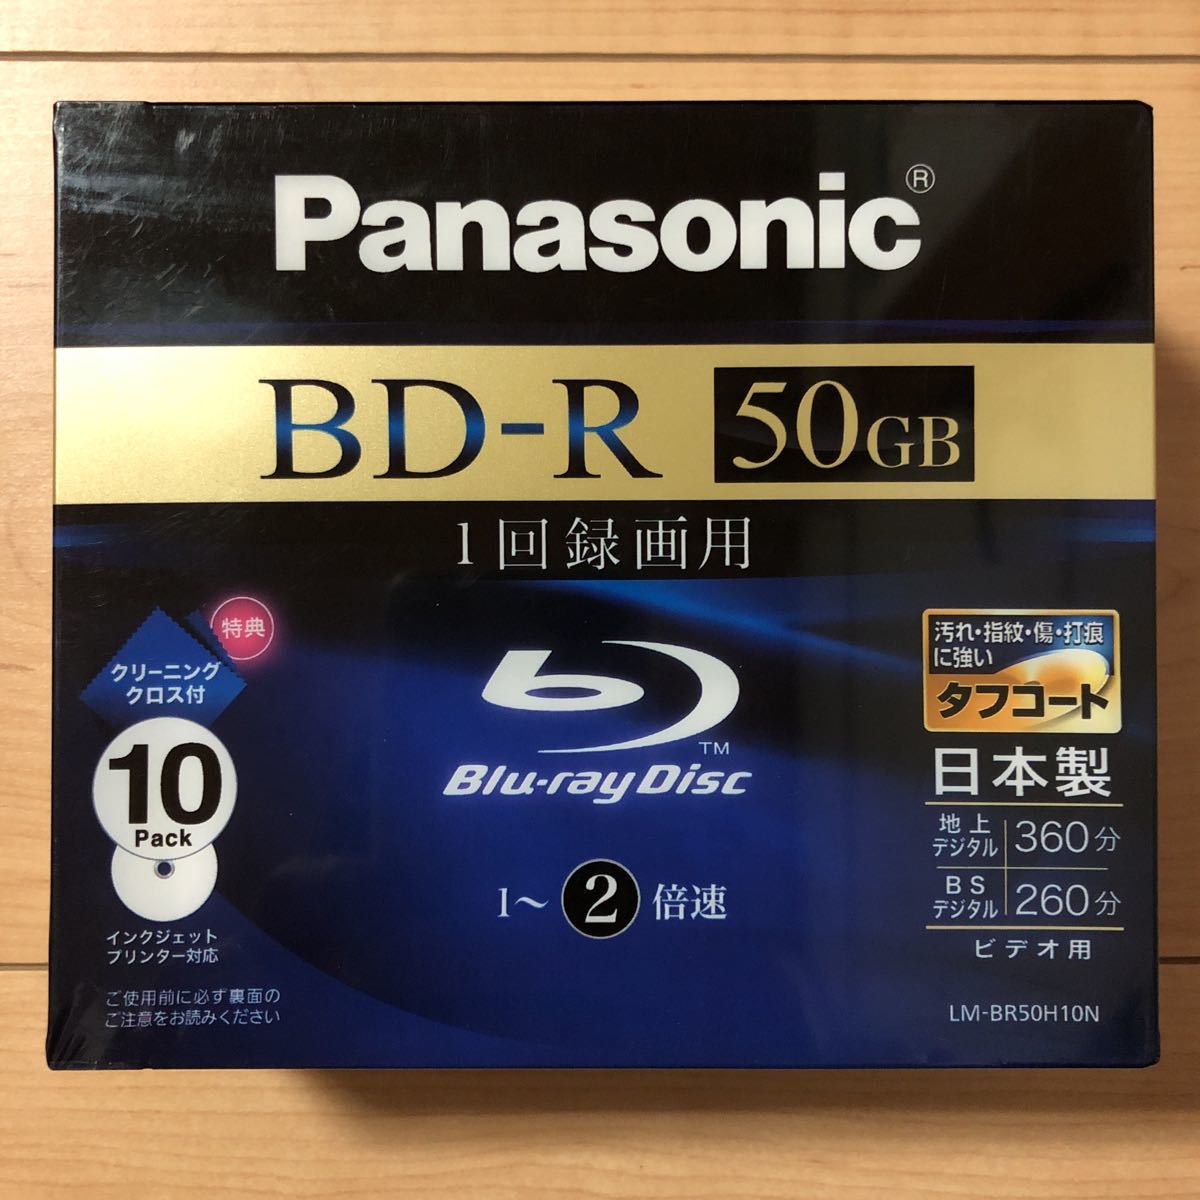 Panasonic パナソニック ブルーレイ BD-R 50GB 10枚×2 2-